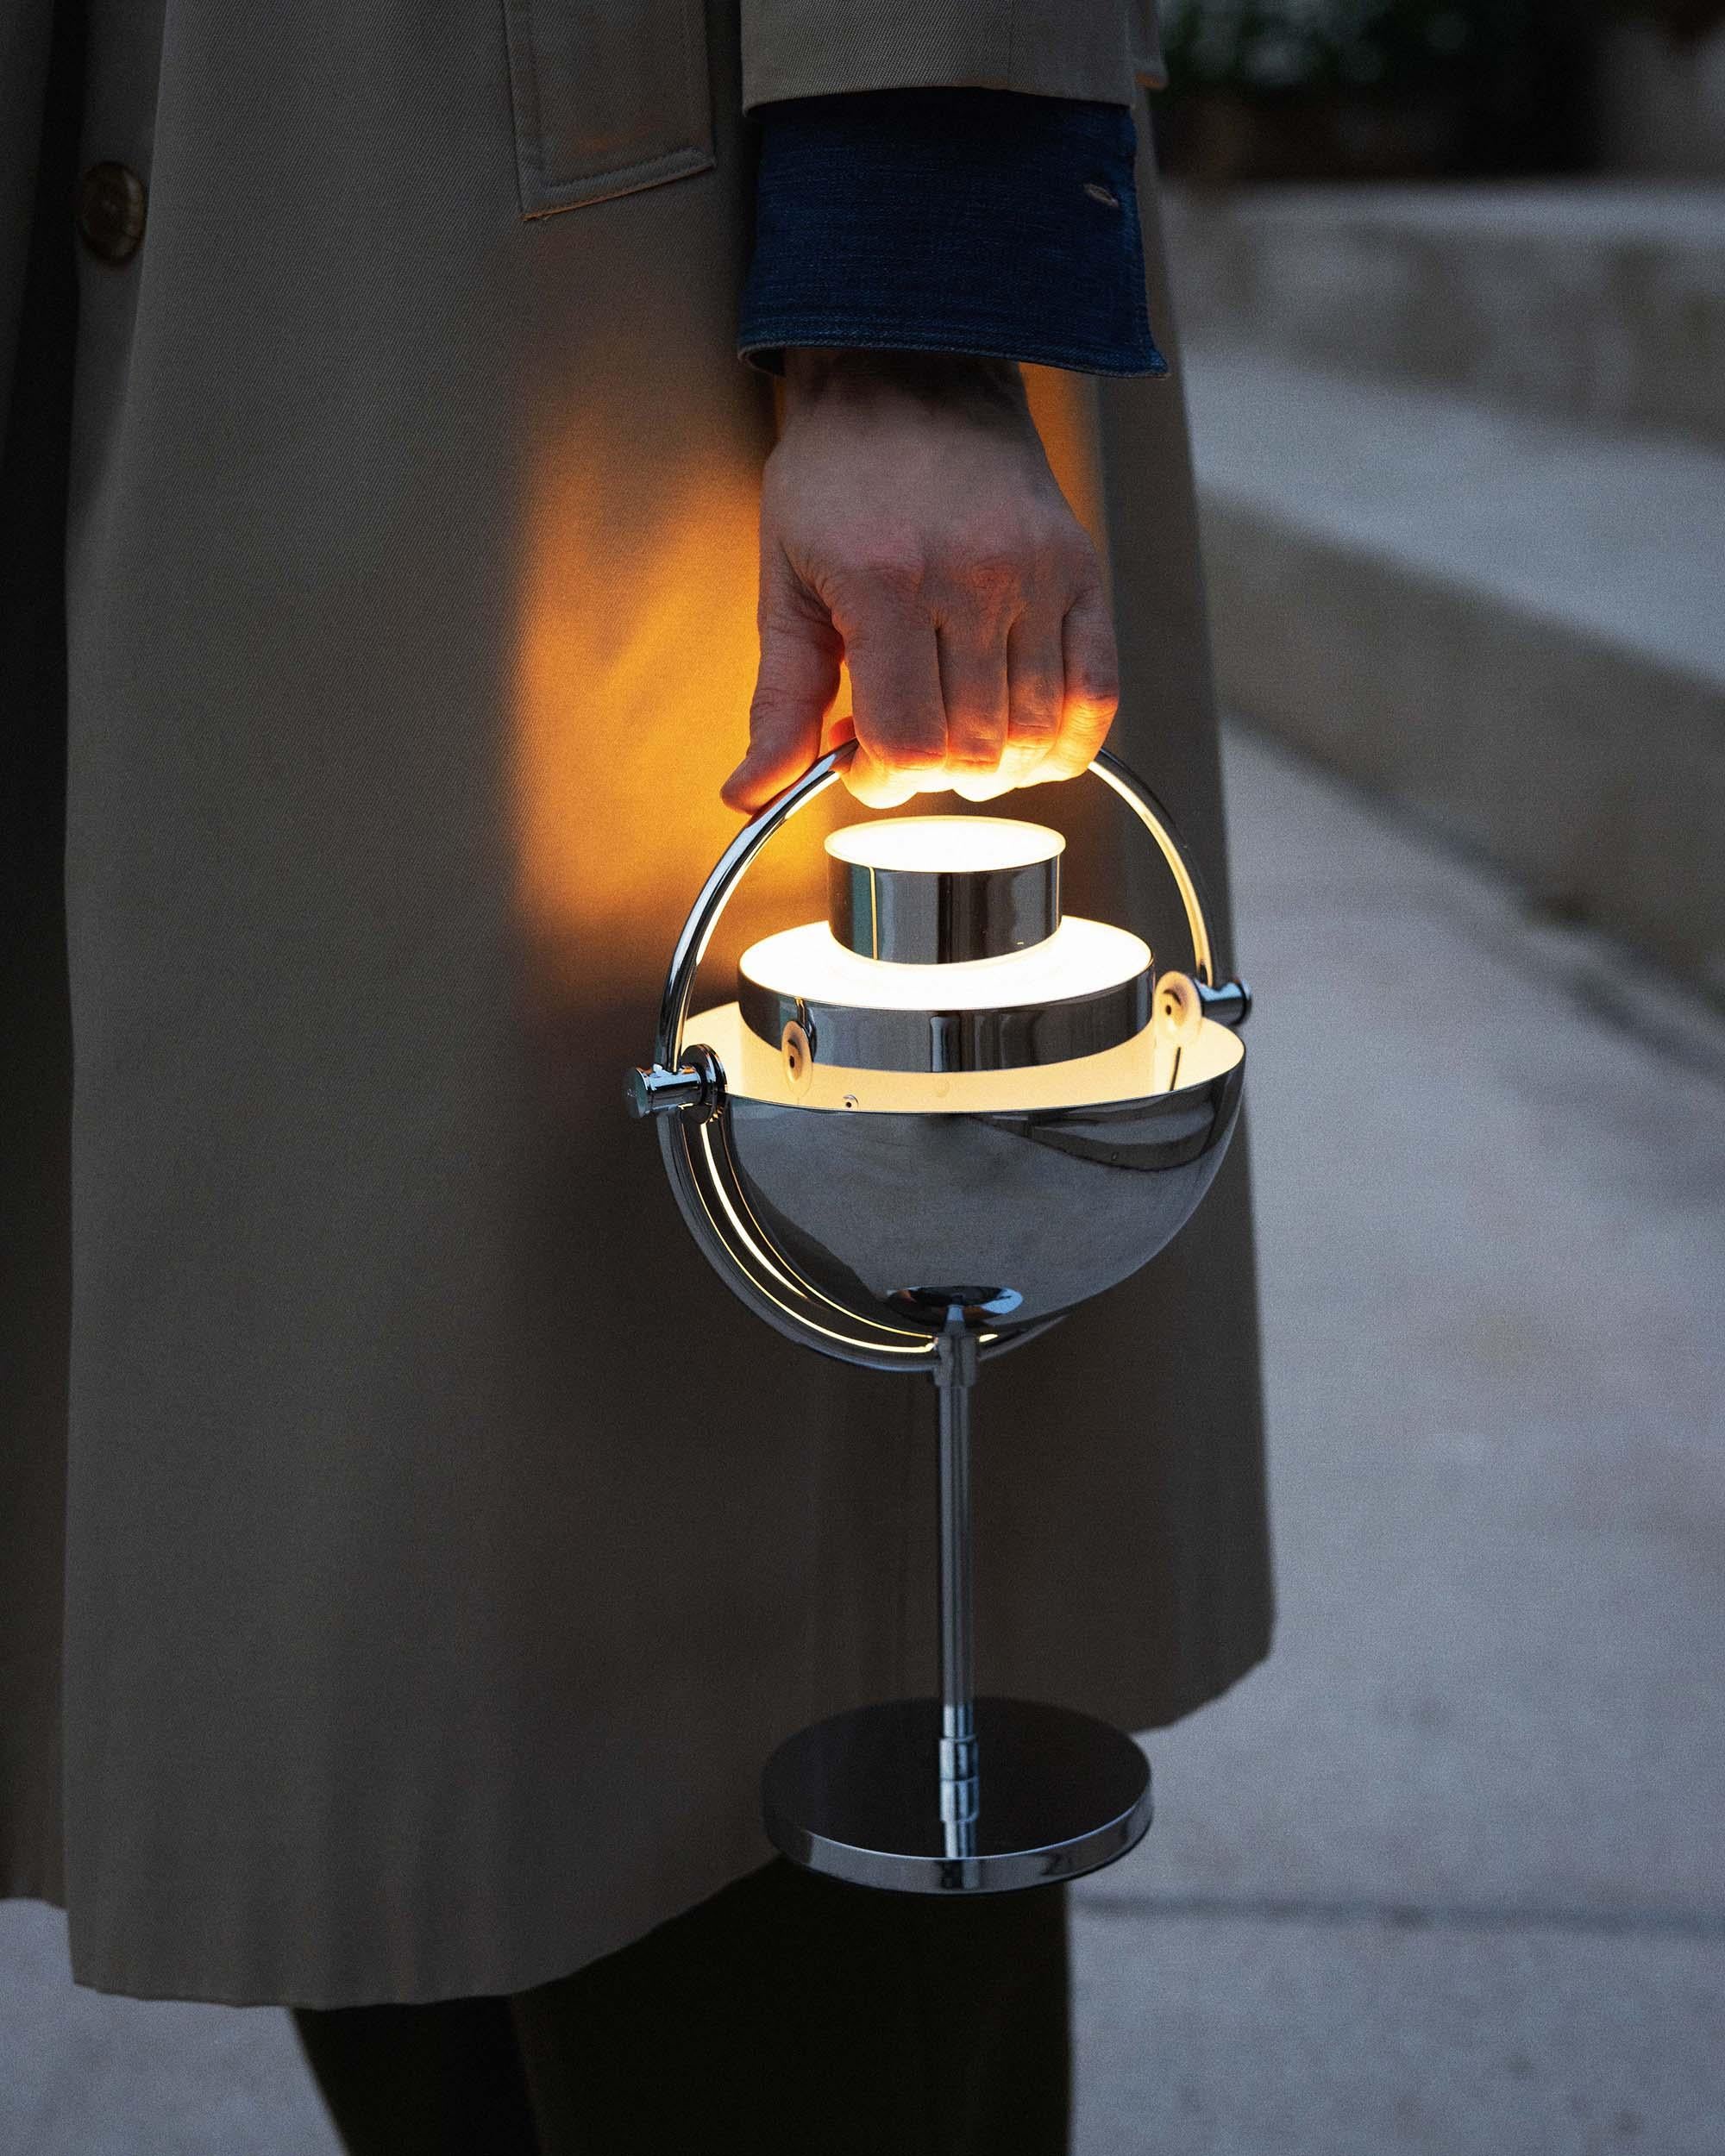 Louis Weisdorf 'Multi-Lite' lampe de table portable en chrome.

Conçue en 1972 par Weisdorf, cette nouvelle version portable du design emblématique de Weisdorf a été créée par la société danoise GUBI, qui reproduit méticuleusement son œuvre en